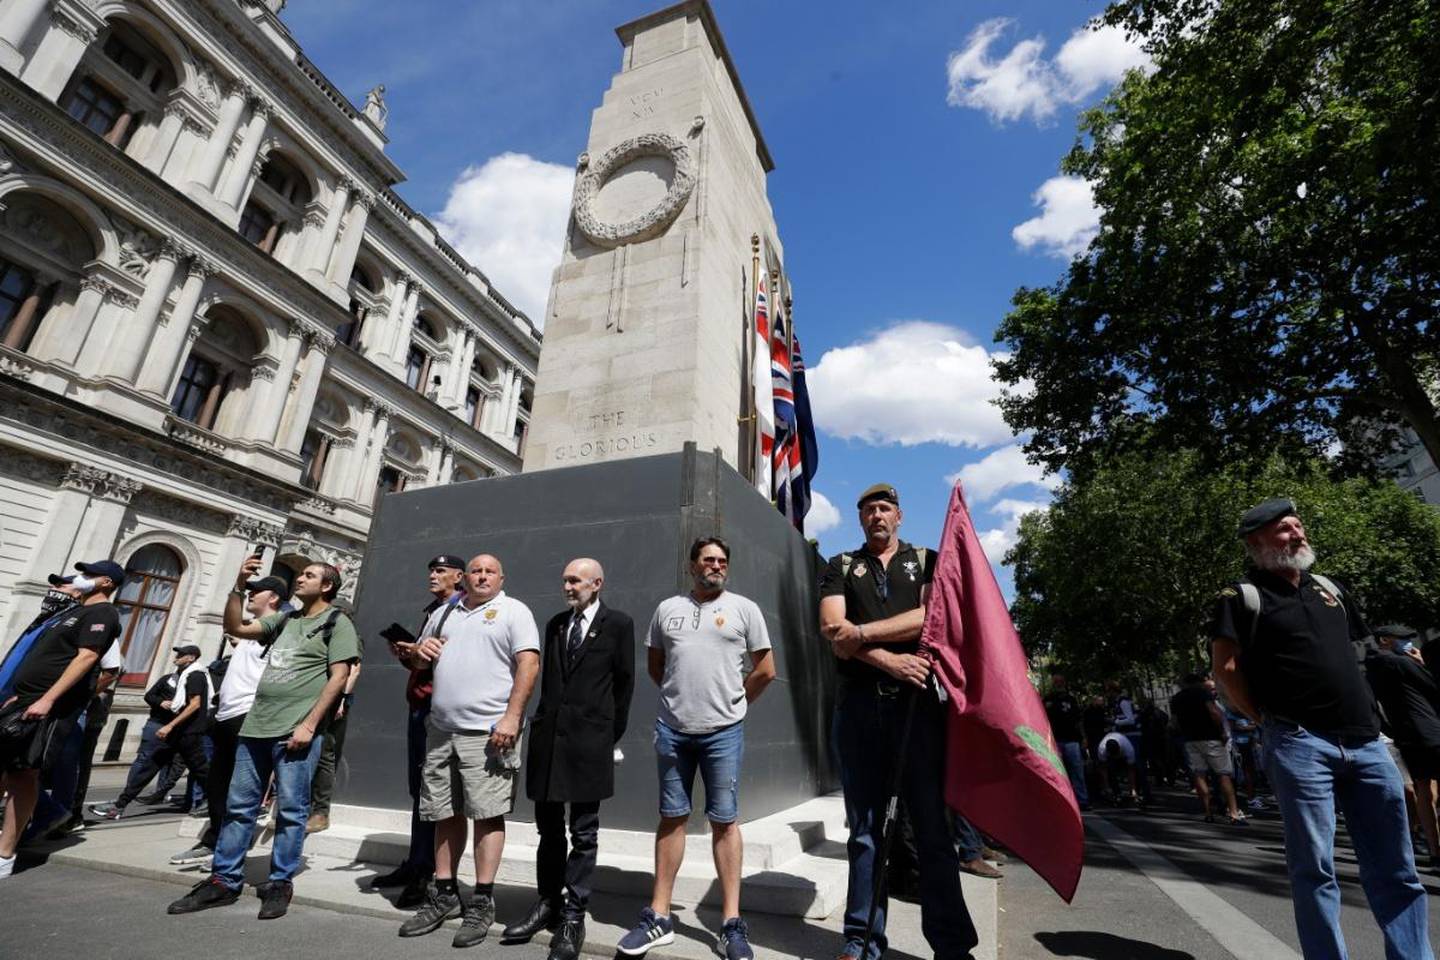 Medlemmer av ytre høyre-grupper samlet seg lørdag i London. Politi og myndigheter har lagt strenge restriksjoner for markeringene for å hindre sammenstøt mellom høyreaktivister og antirasister.